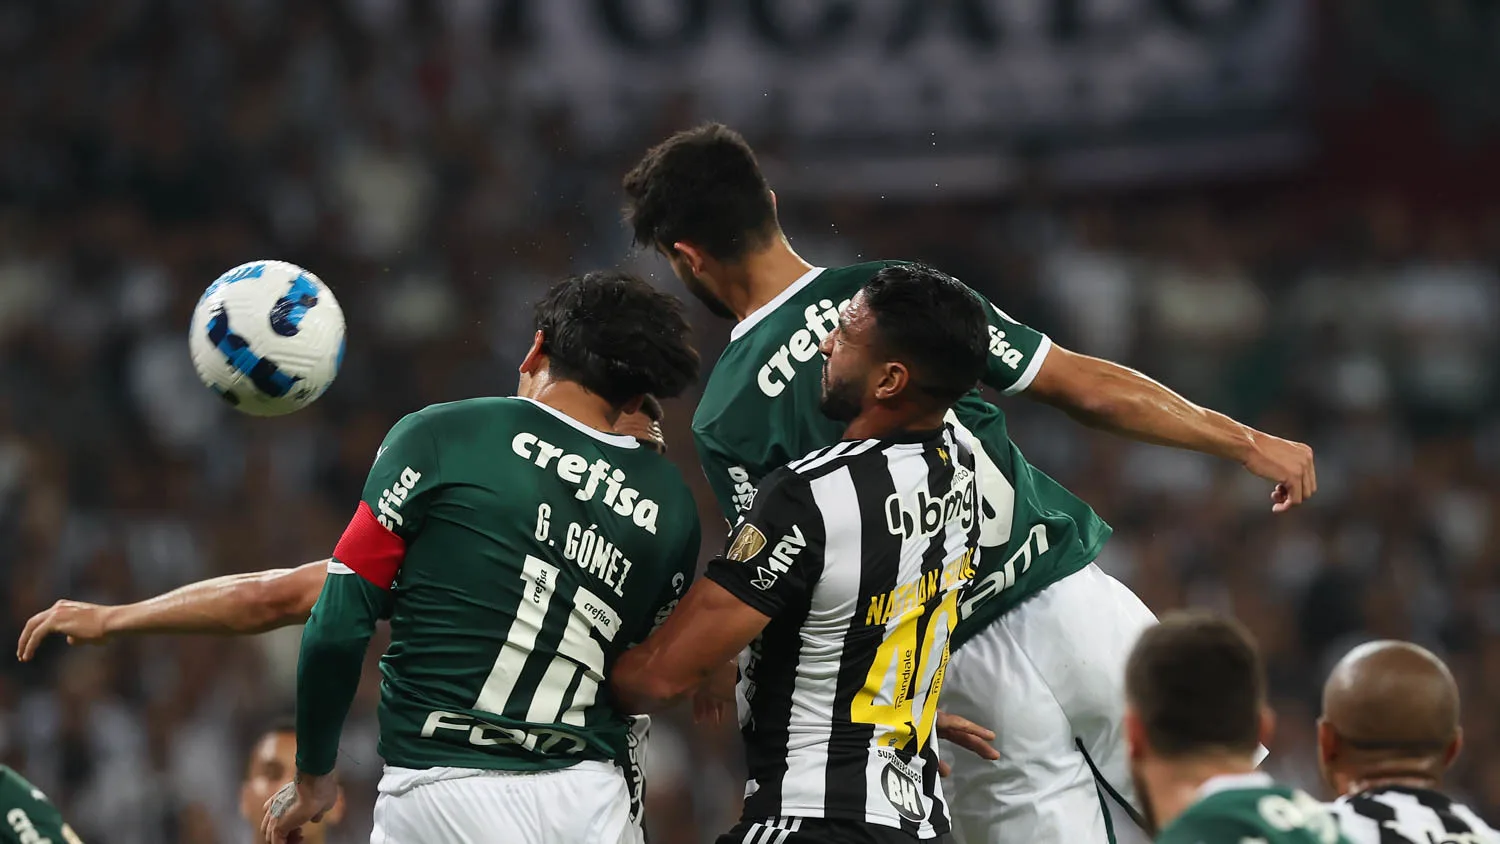 Colunista acredita que o Palmeiras tem jogadas de bola parada melhores do que os gigantes europeus